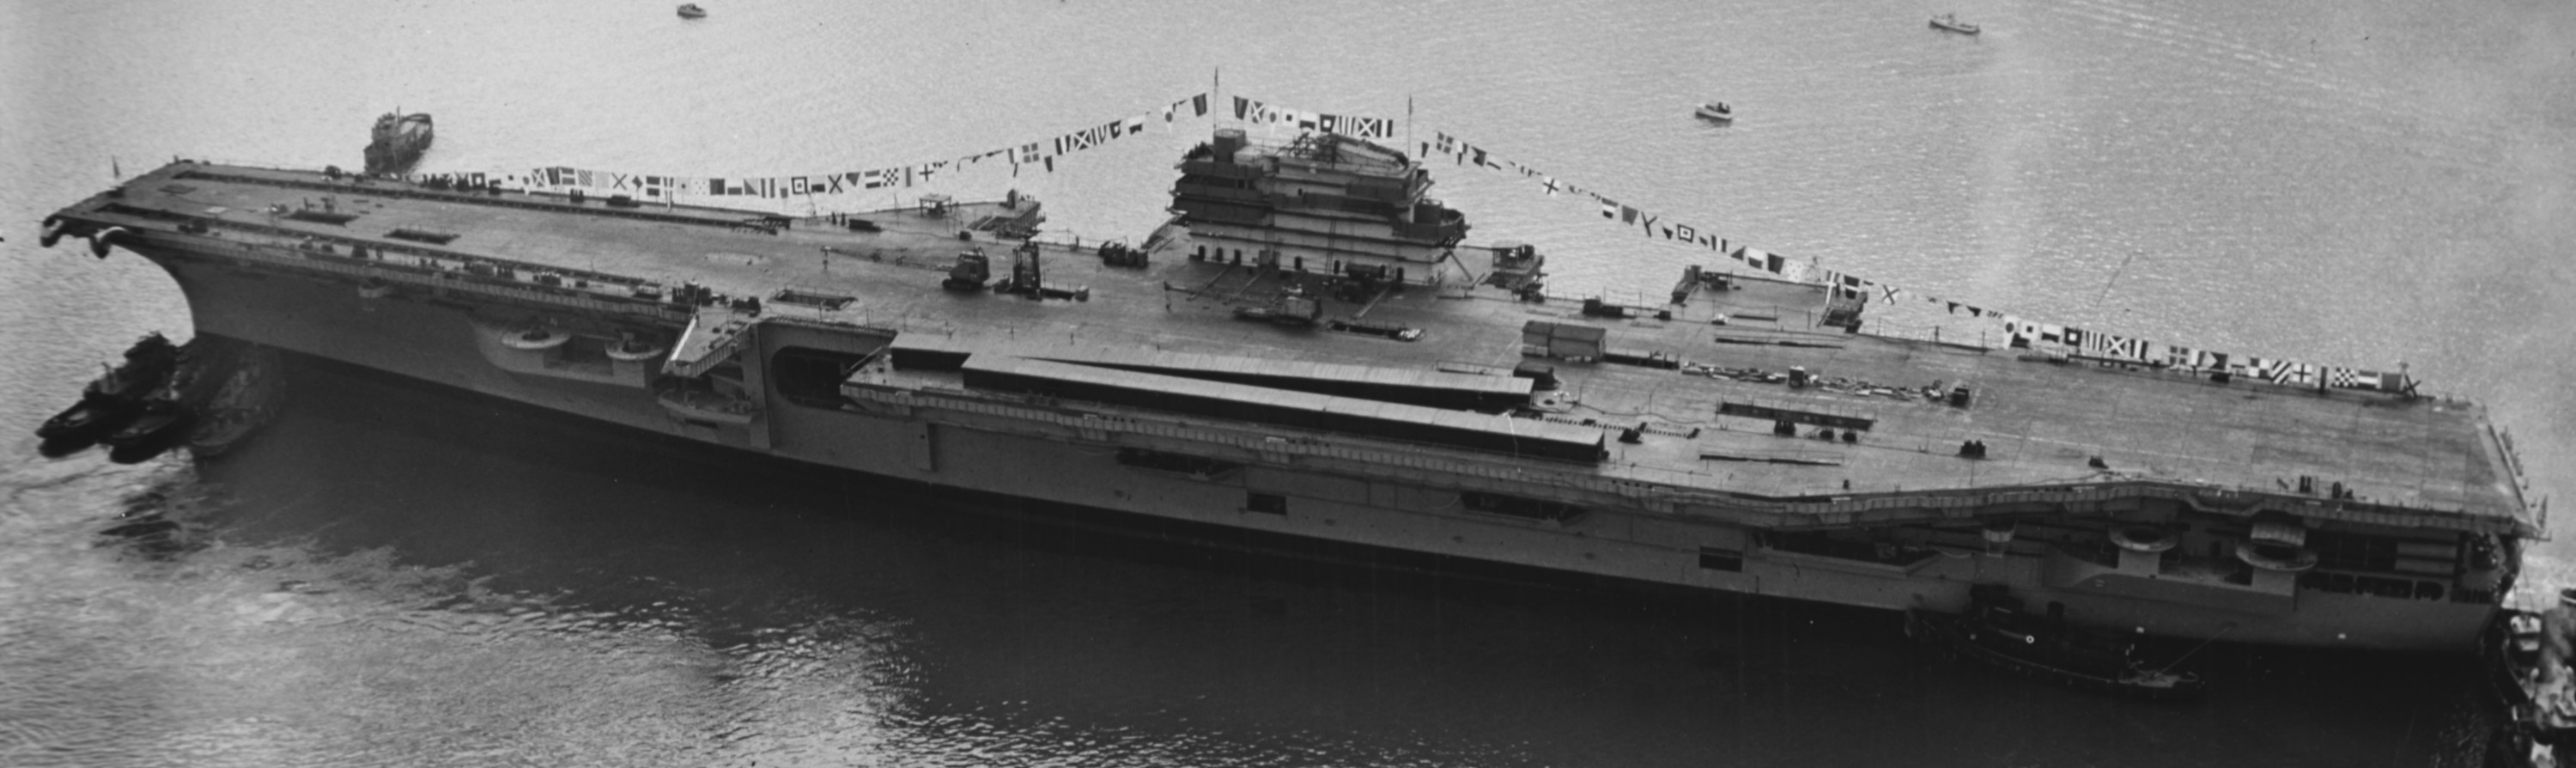 cv-59 uss forrestal aircraft carrier us navy launching december 1954 04